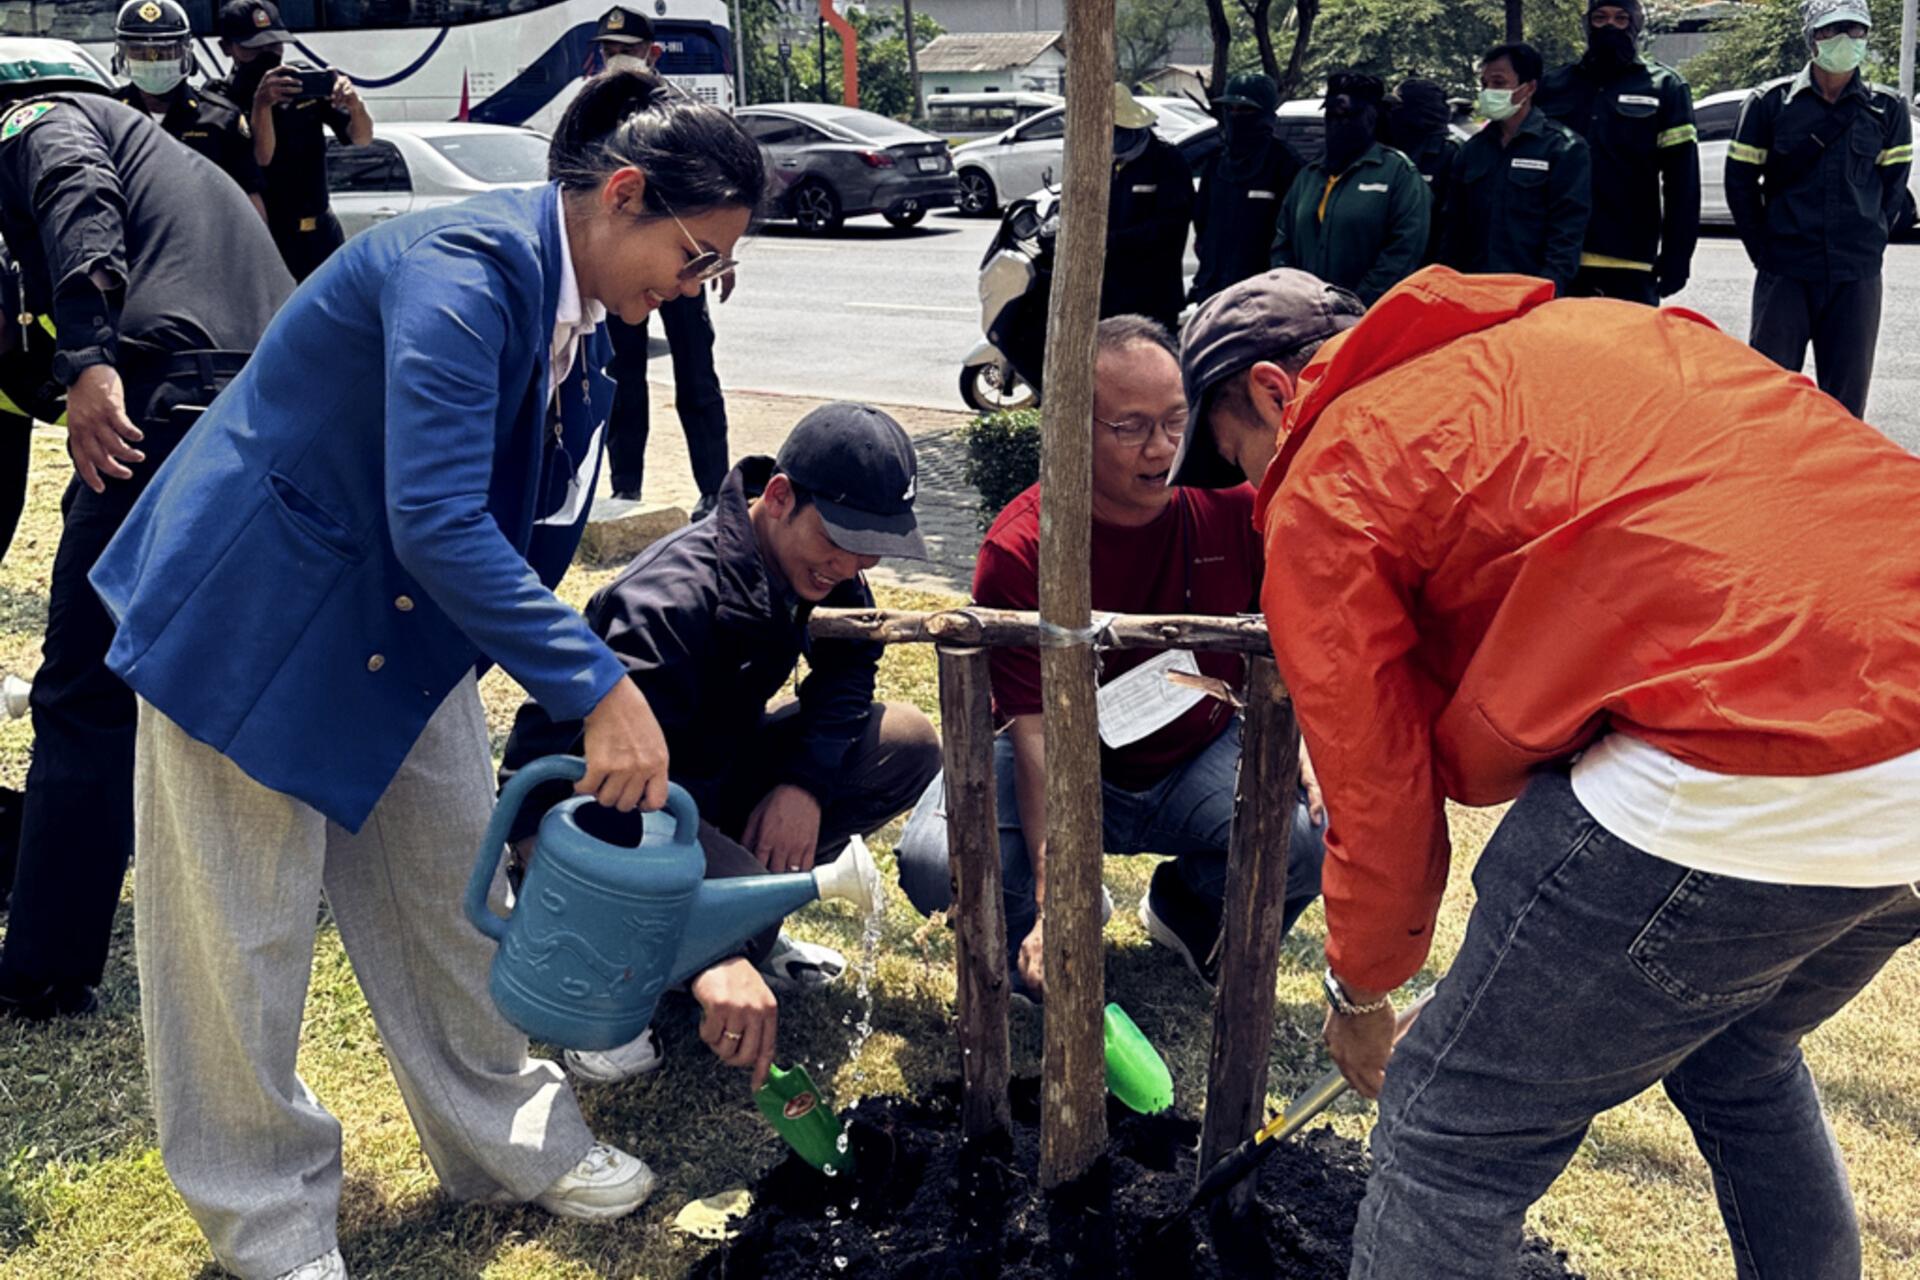 ZEISS Mitarbeitende in Thailand pflanzen Bäume am Earth Day